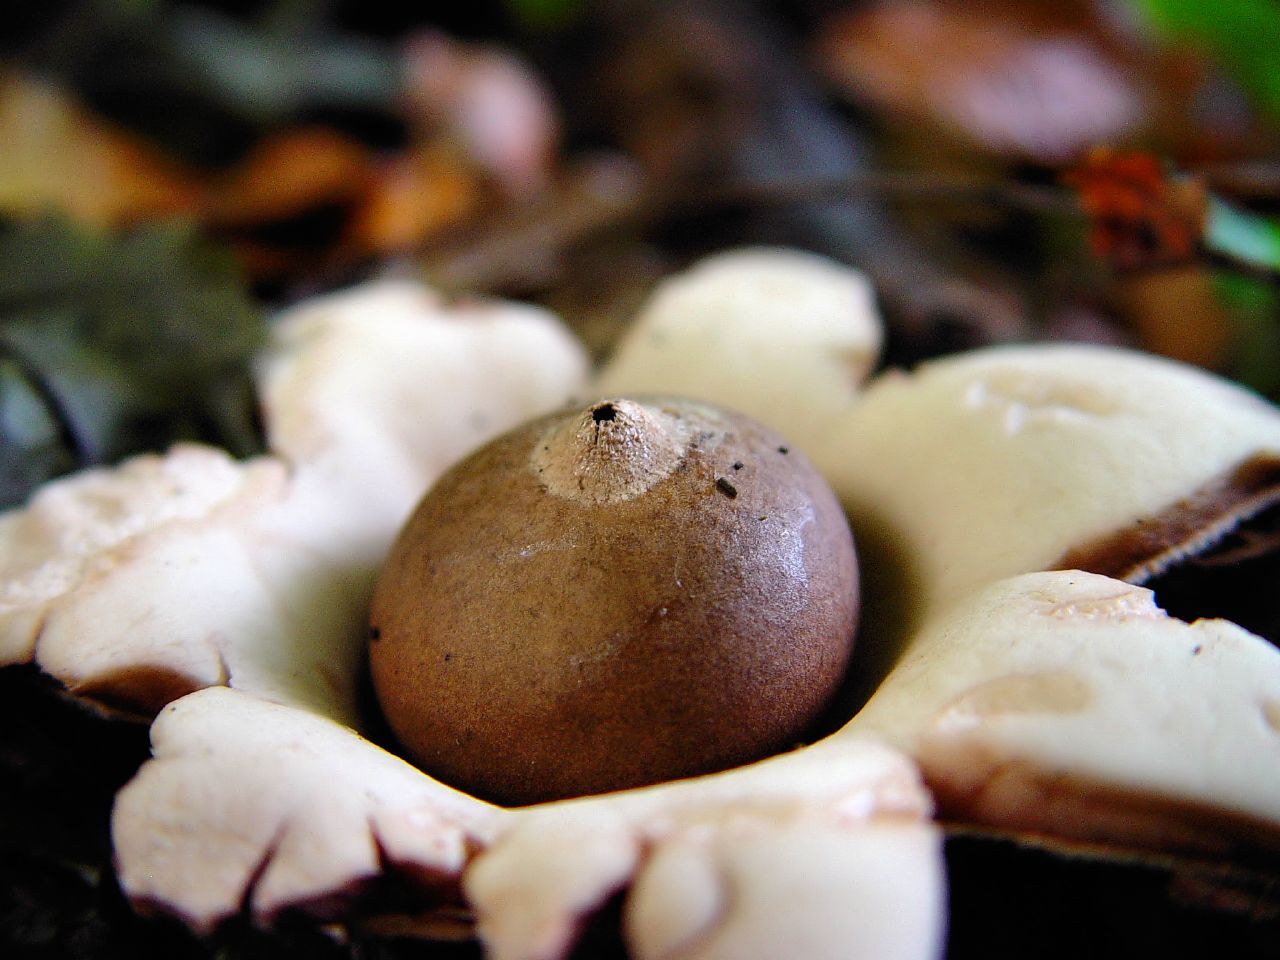 Звездовик полосатый — описание гриба, где растет, похожие виды, фото